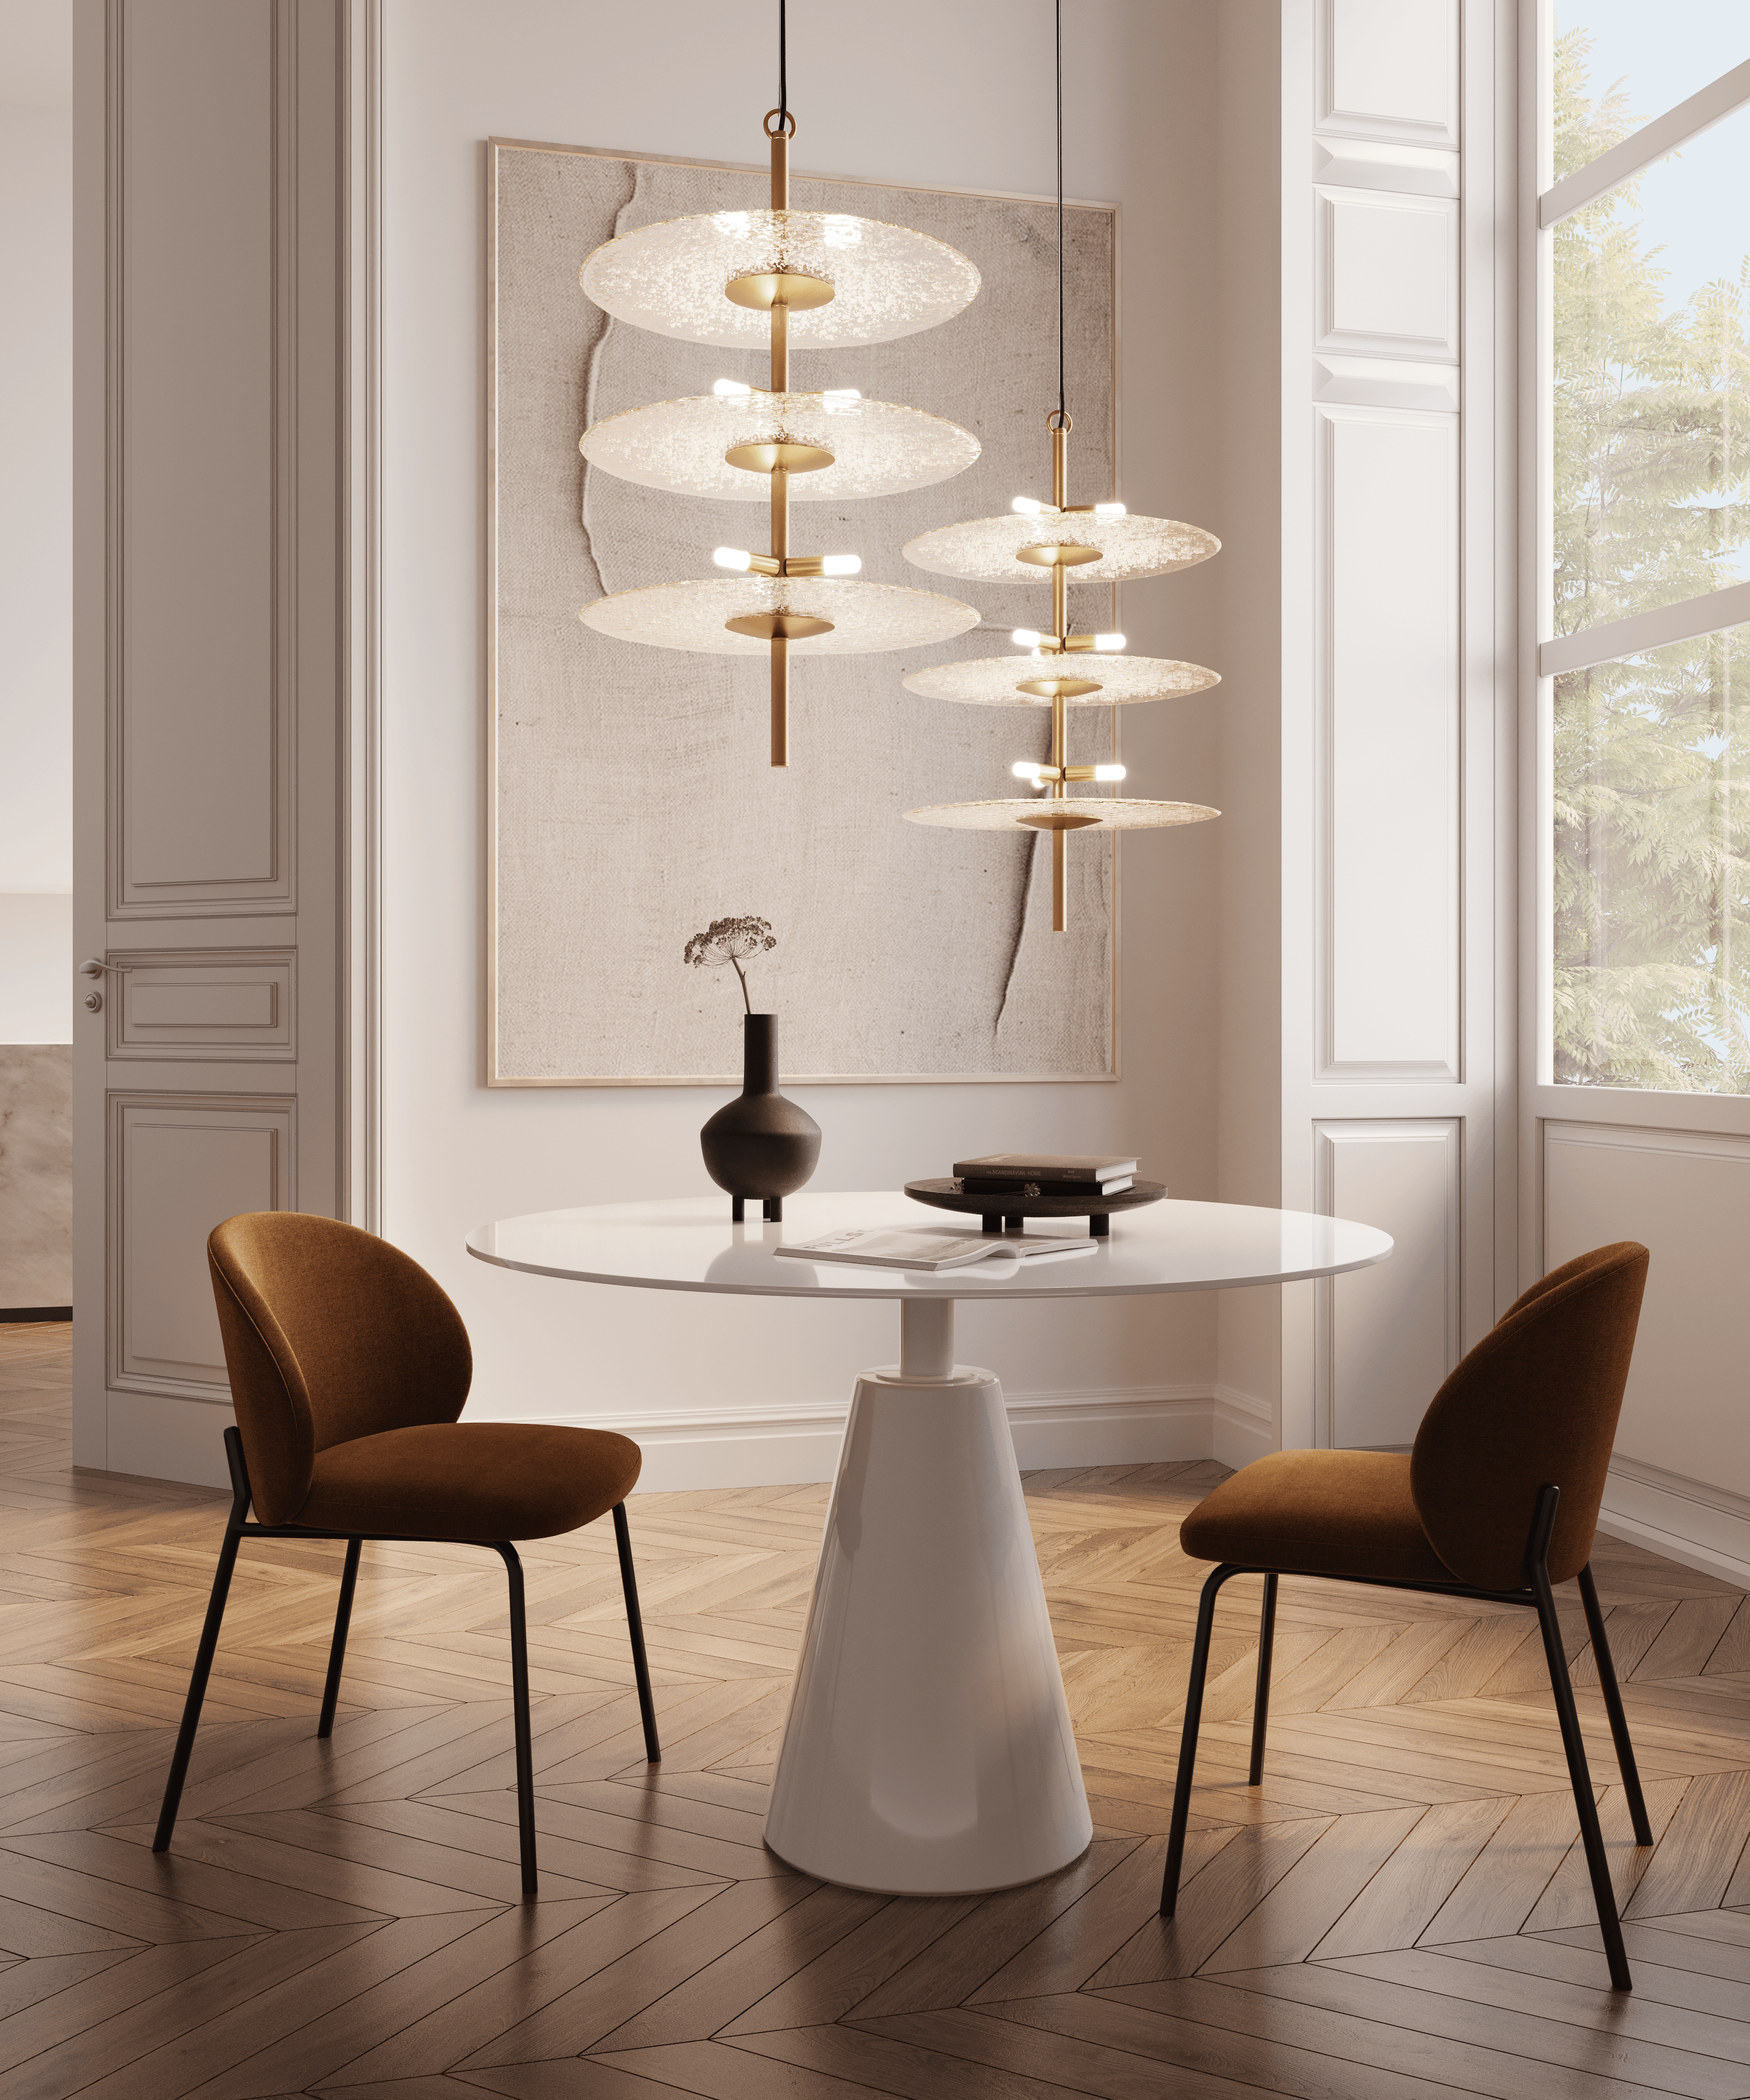 Sprinkled Glass Vertical lamp, SKU. 27709 by Pikartlights 3d model